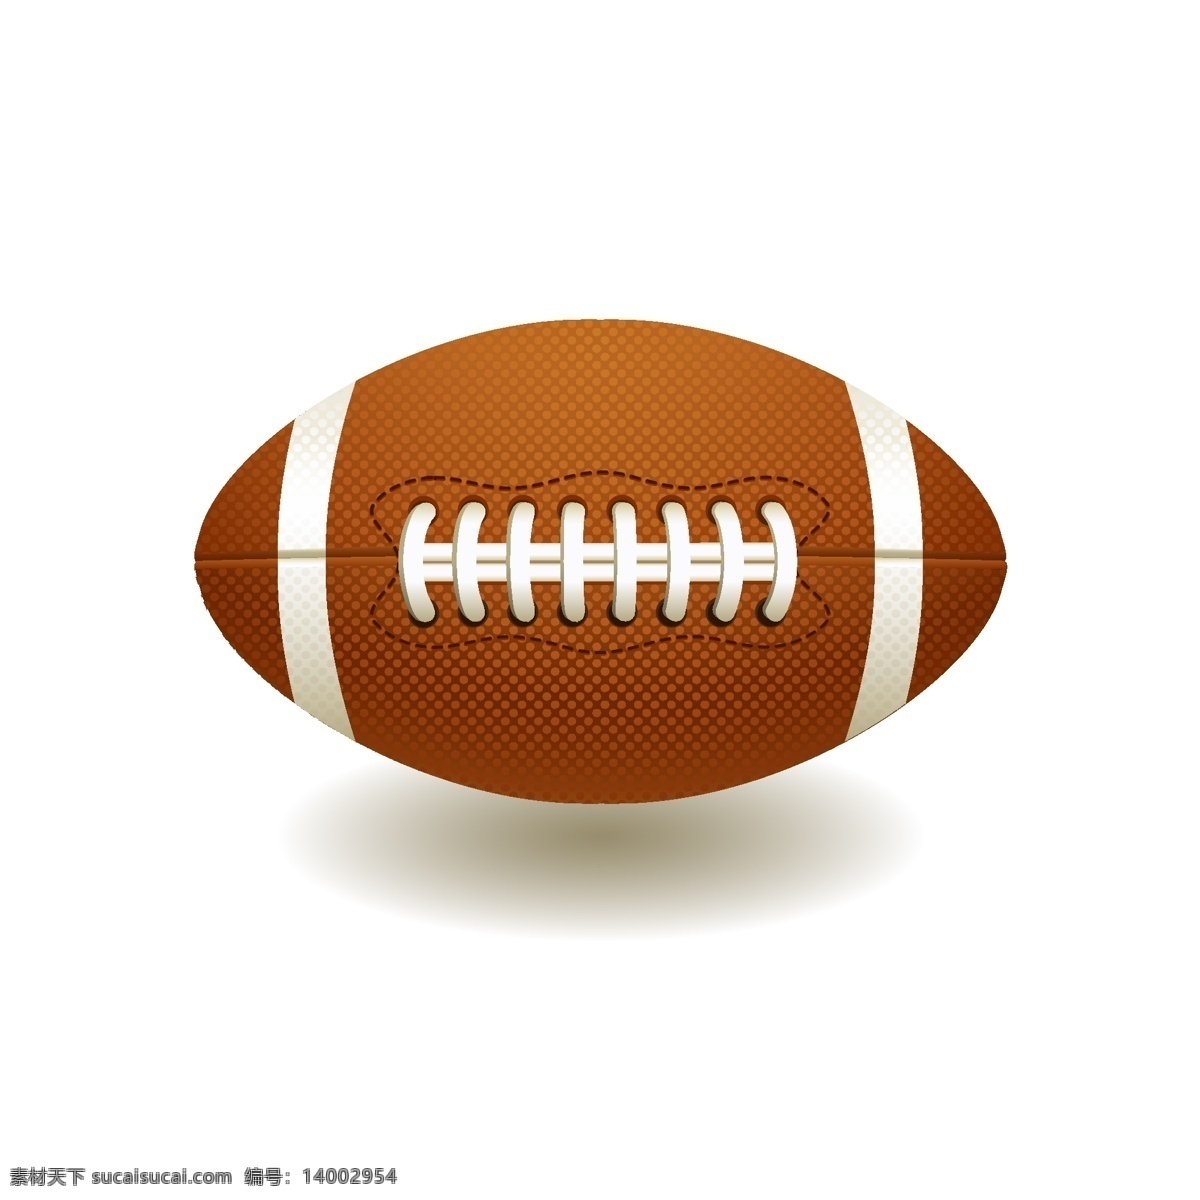 球类素材 橄榄球素材 矢量橄榄球 卡通橄榄球